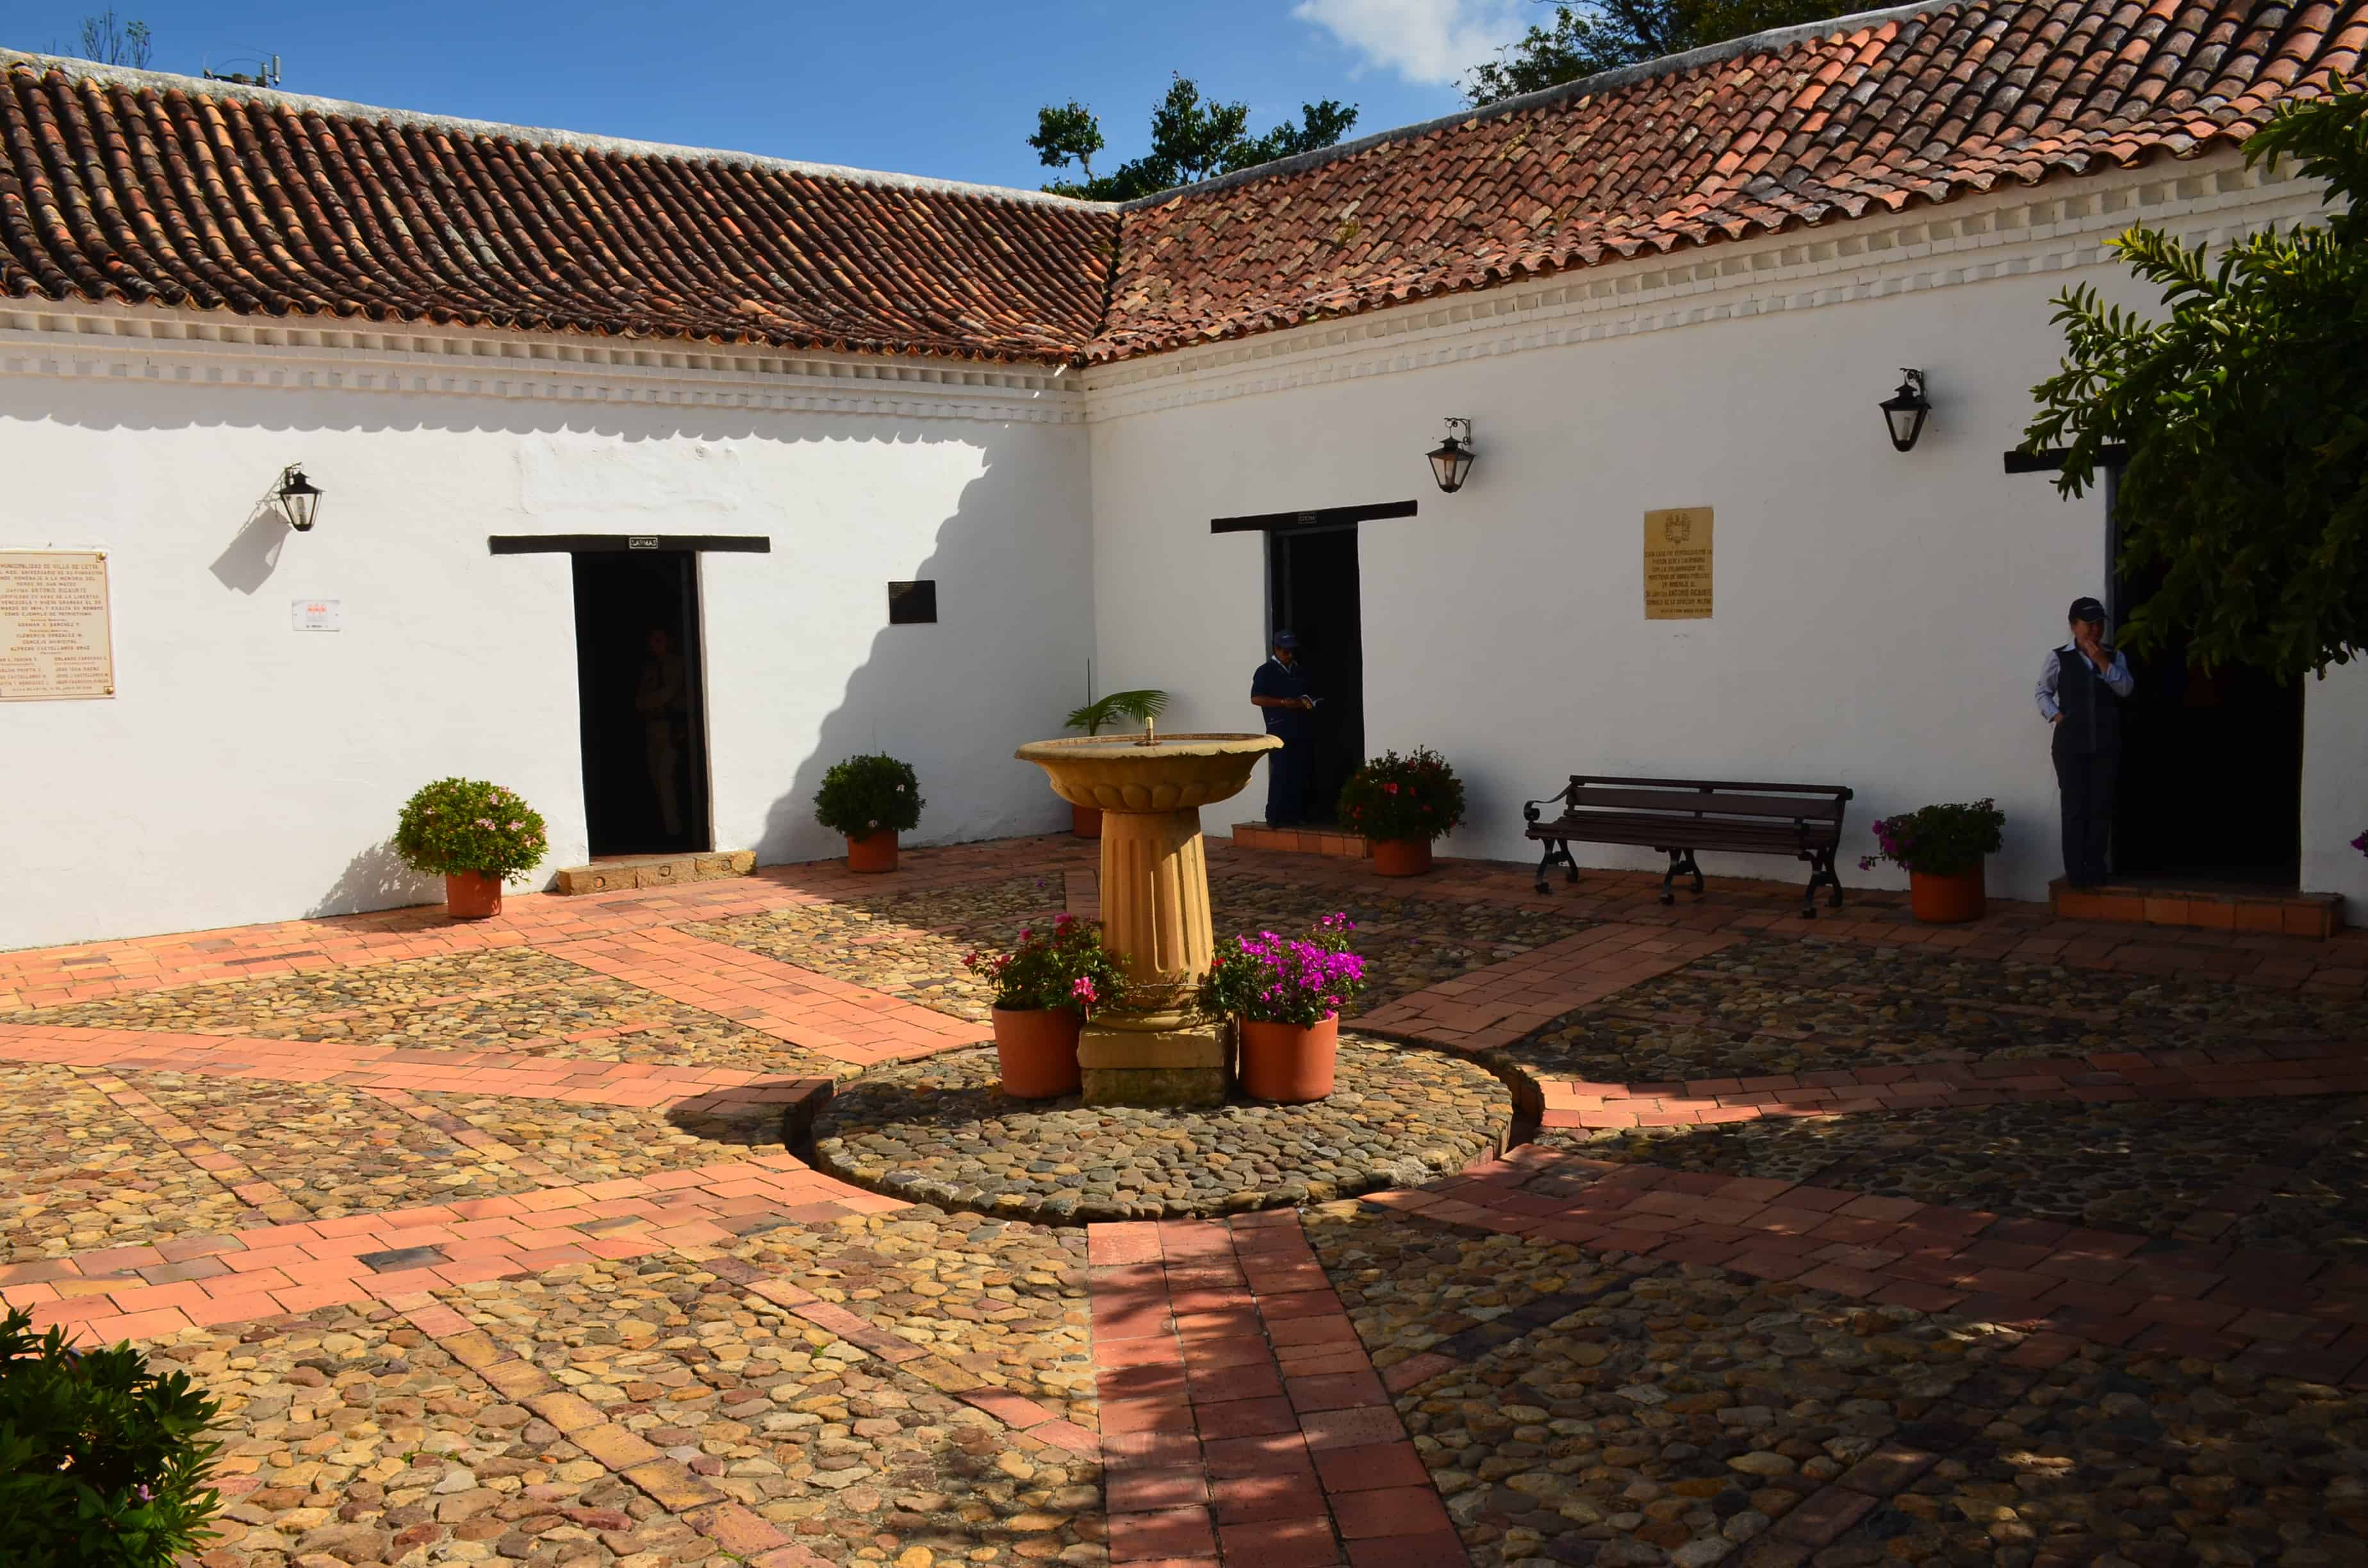 Courtyard of the Antonio Ricaurte House Museum in Villa de Leyva, Boyacá, Colombia